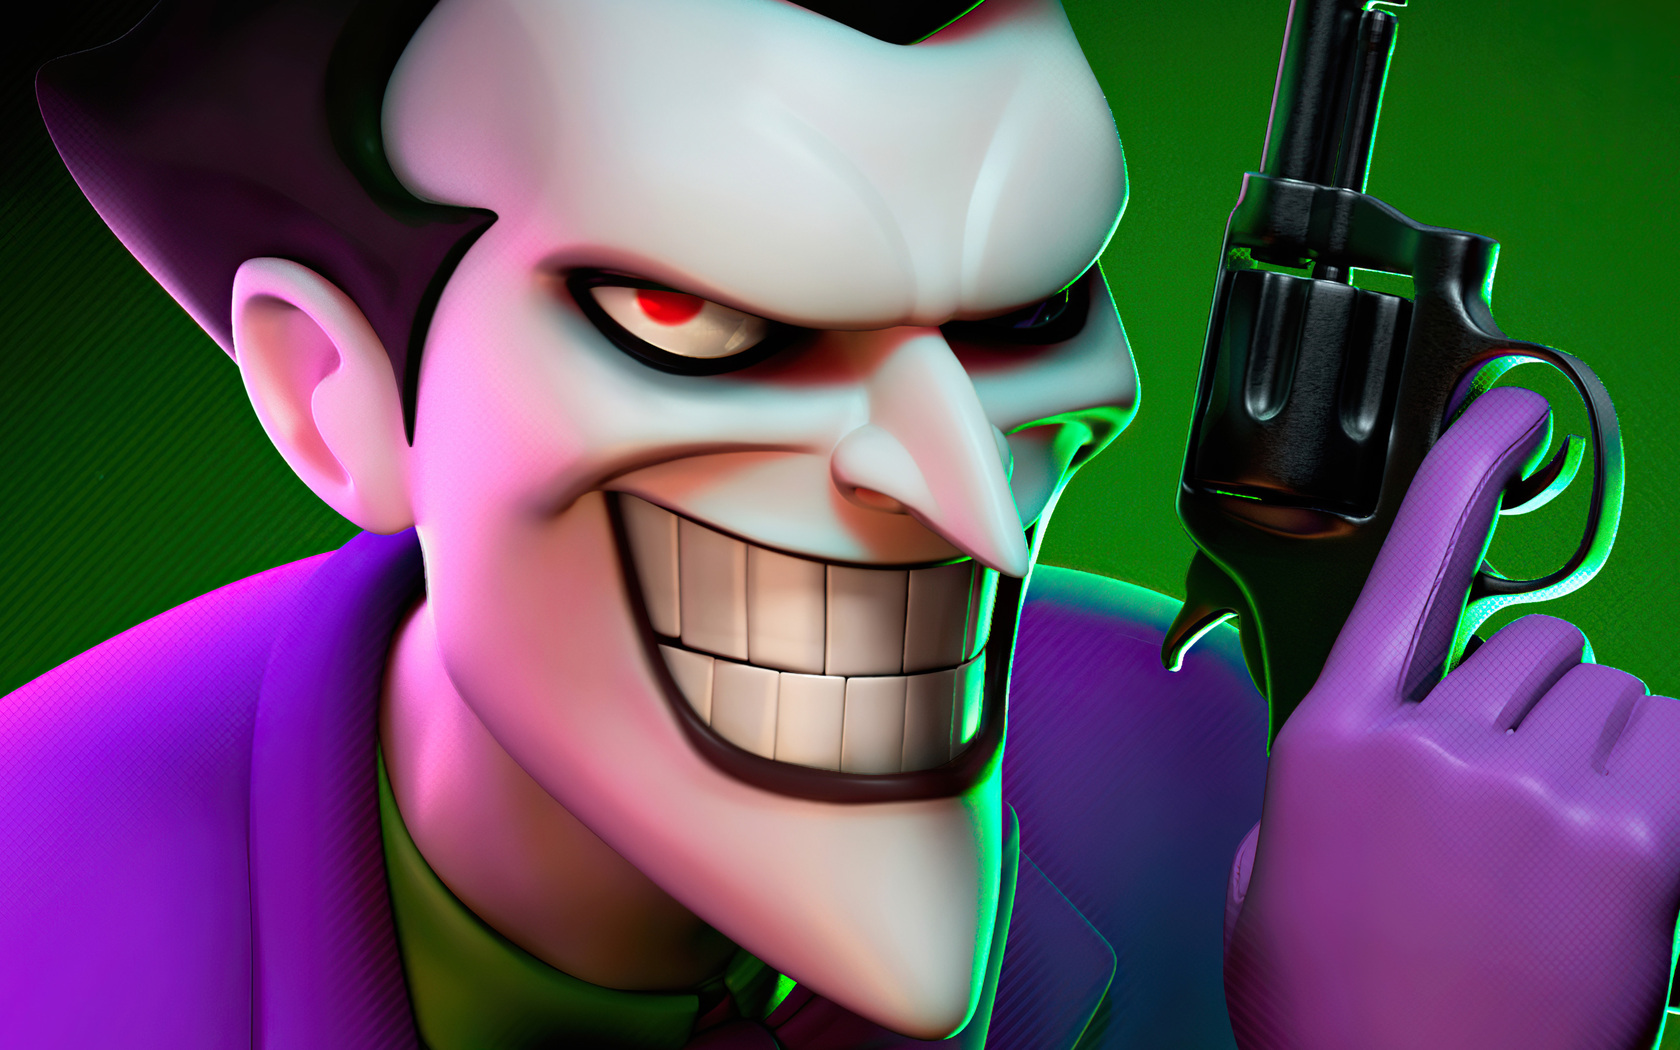 crazy-joker-2d.jpg